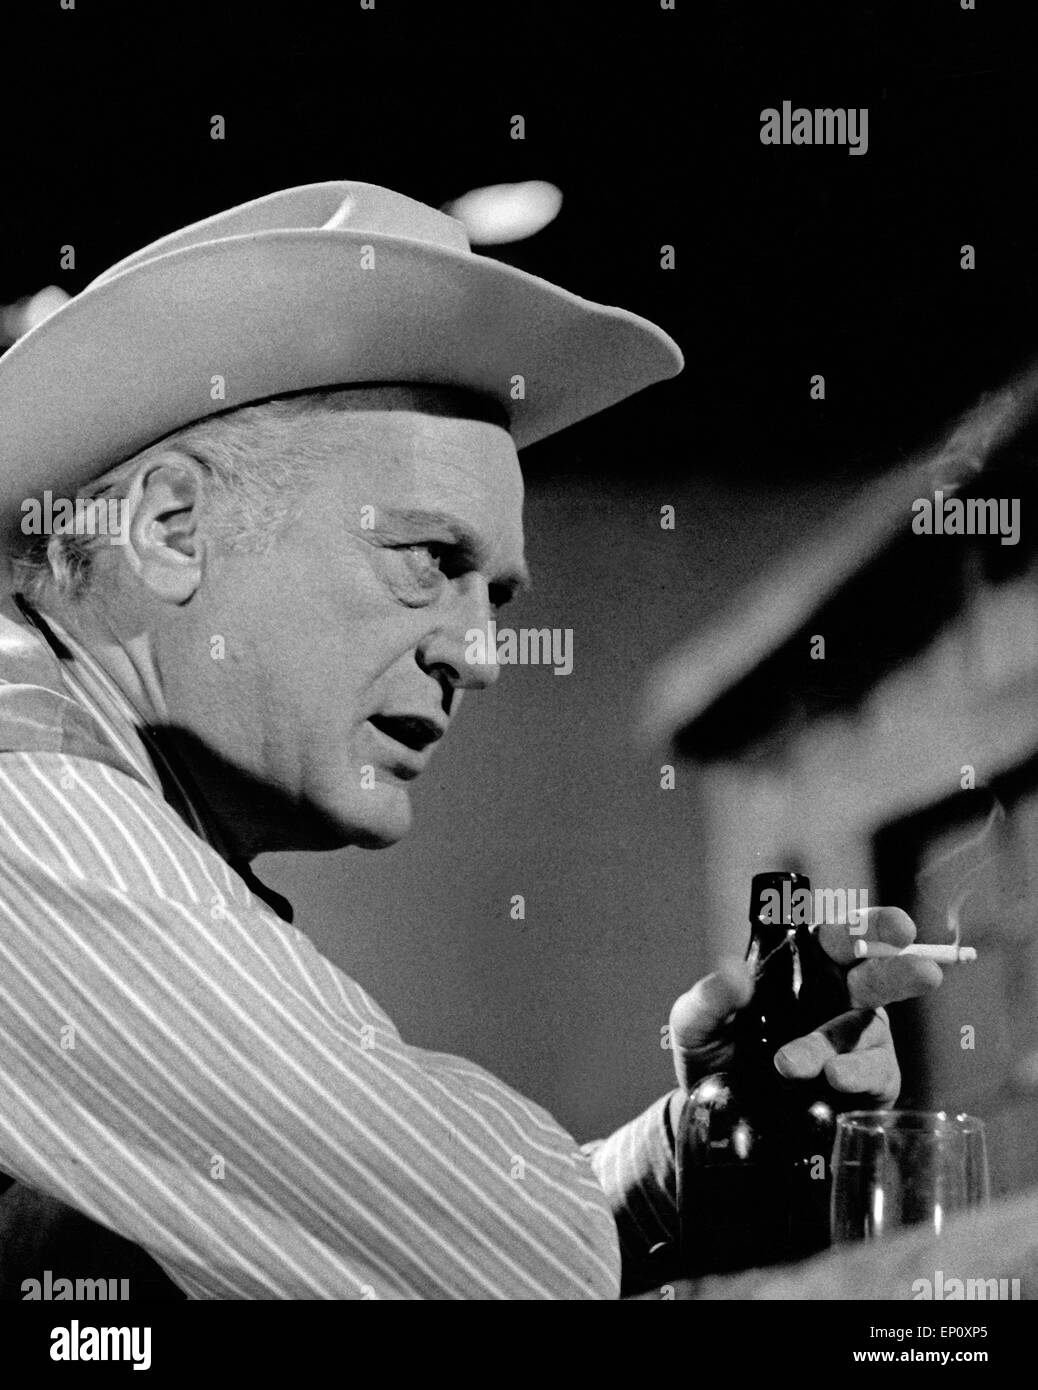 Deutscher Wis Curd Jürgens als Cowboy im Saloon im TV-Porträt chauspieler Sindh Wis', Deutschland 1960er J Stockfoto